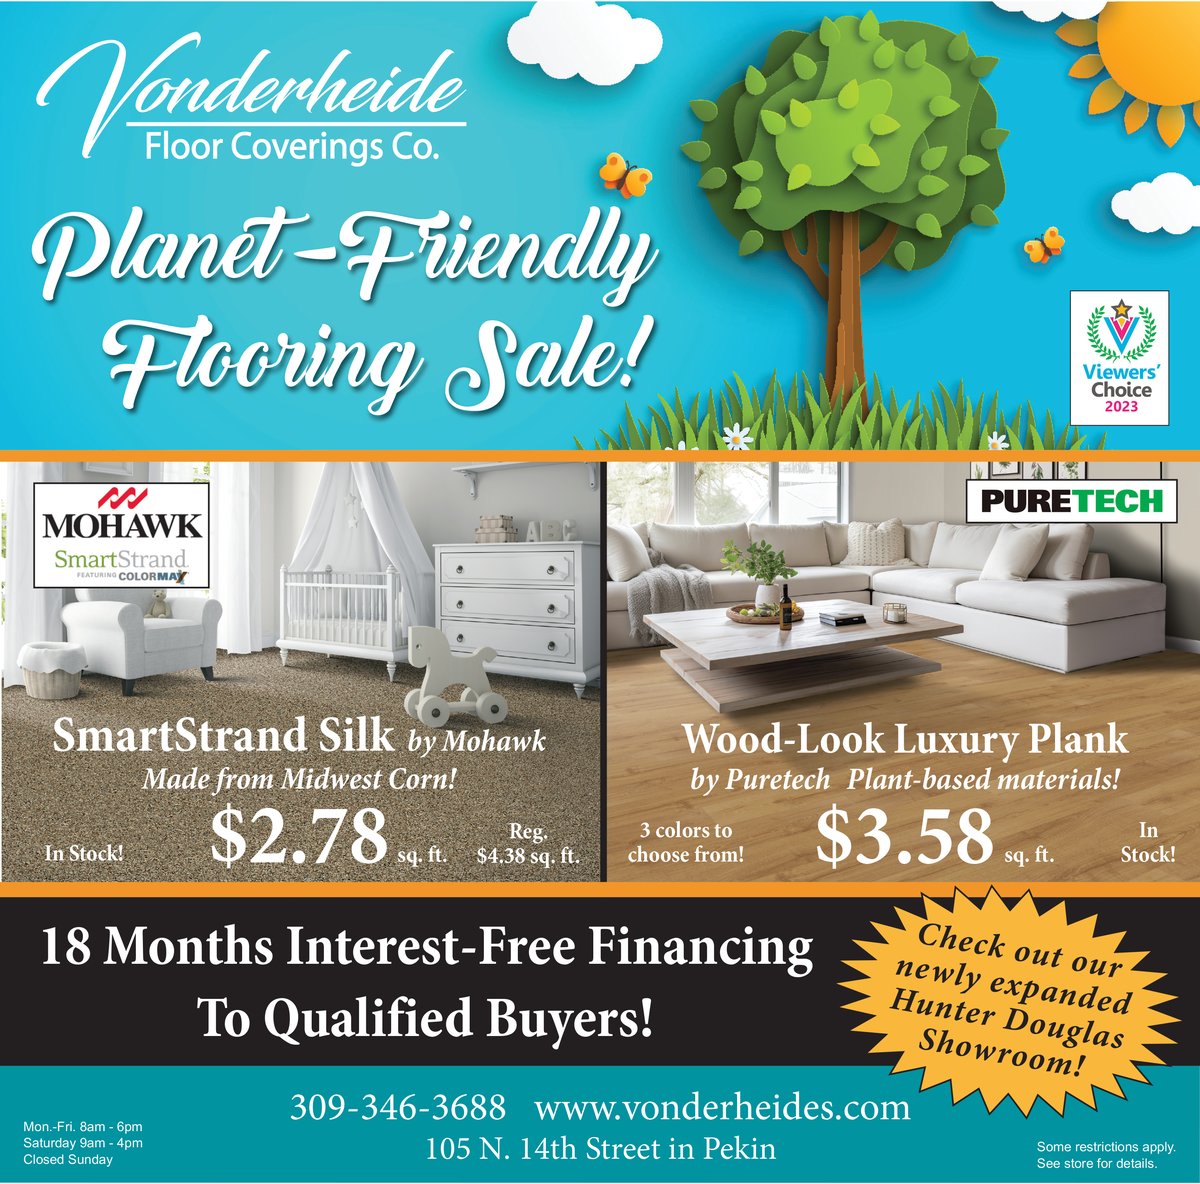 Planet Friendly Flooring Sale at Vonderheide Floor Coverings